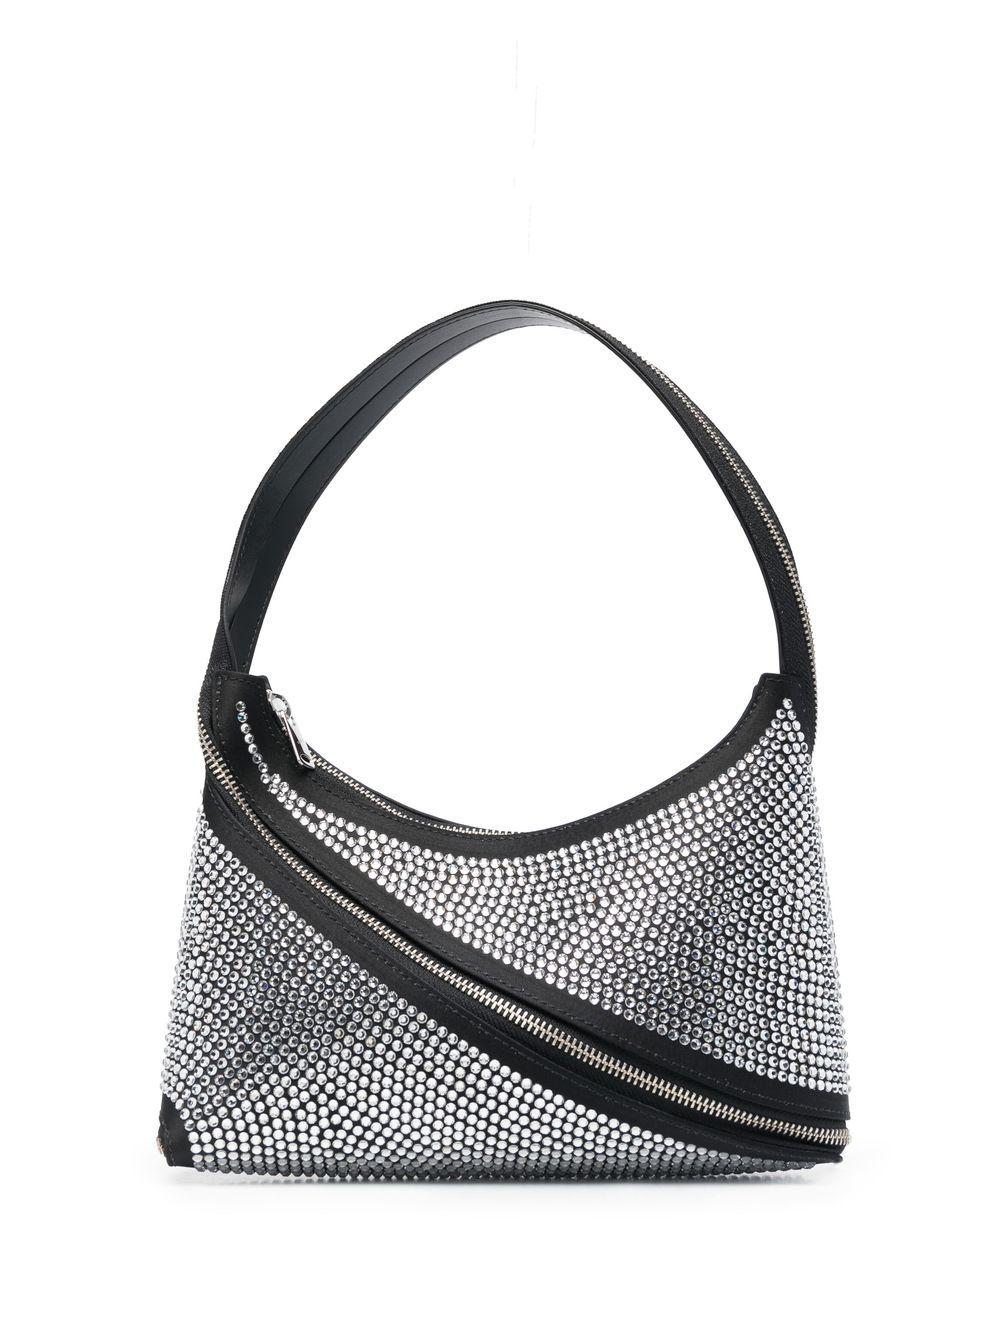 Coperni Crystal-embellished Shoulder Bag in Grey | Lyst UK